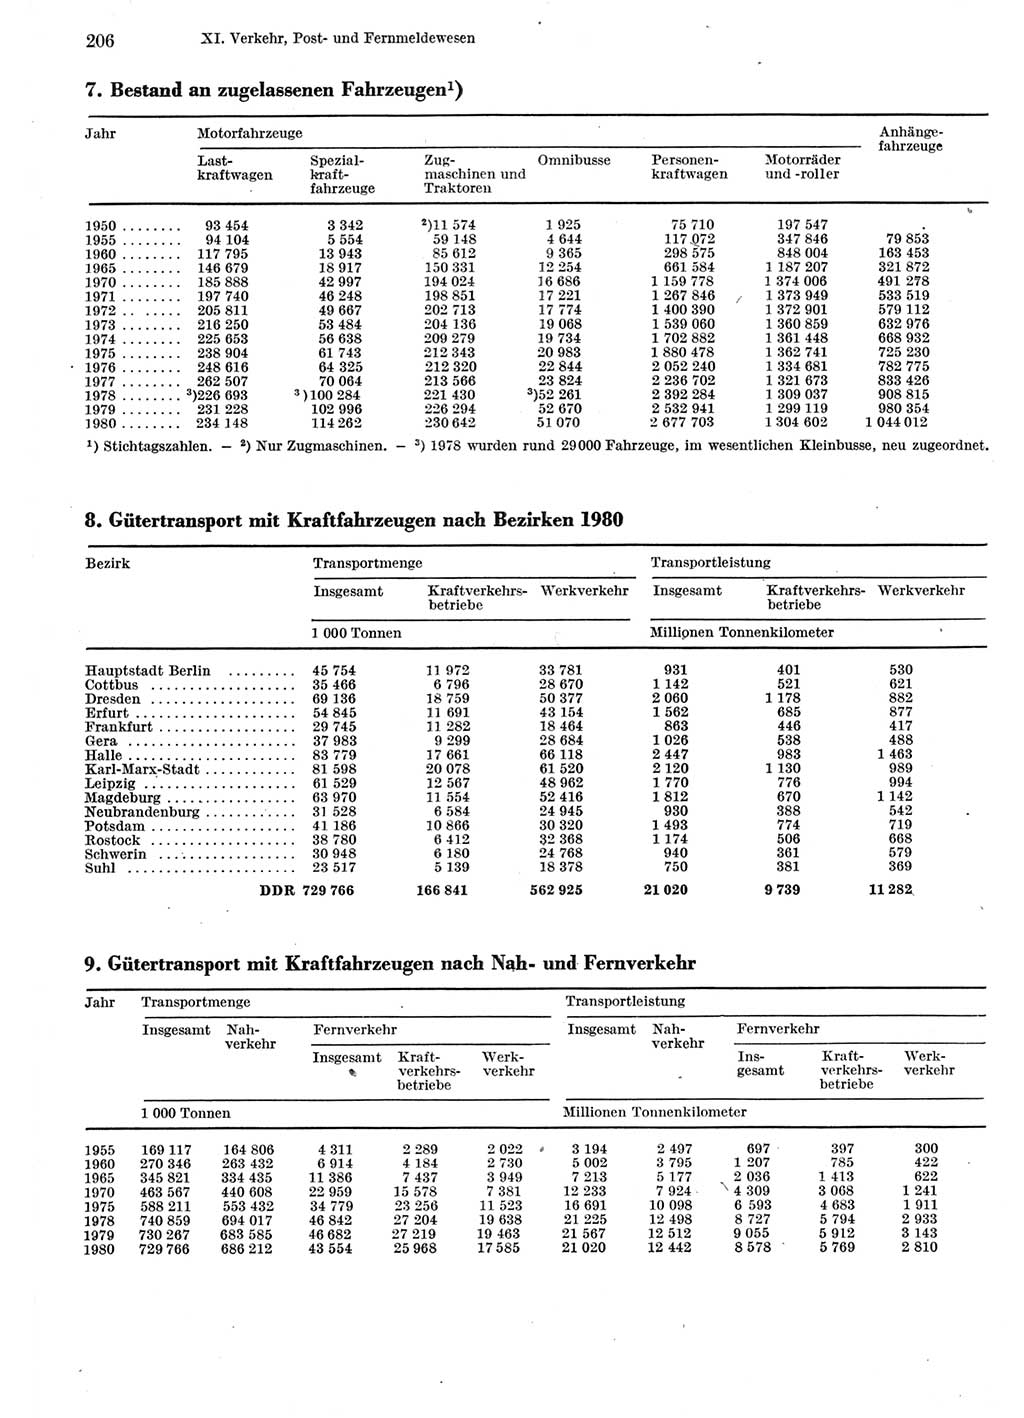 Statistisches Jahrbuch der Deutschen Demokratischen Republik (DDR) 1981, Seite 206 (Stat. Jb. DDR 1981, S. 206)